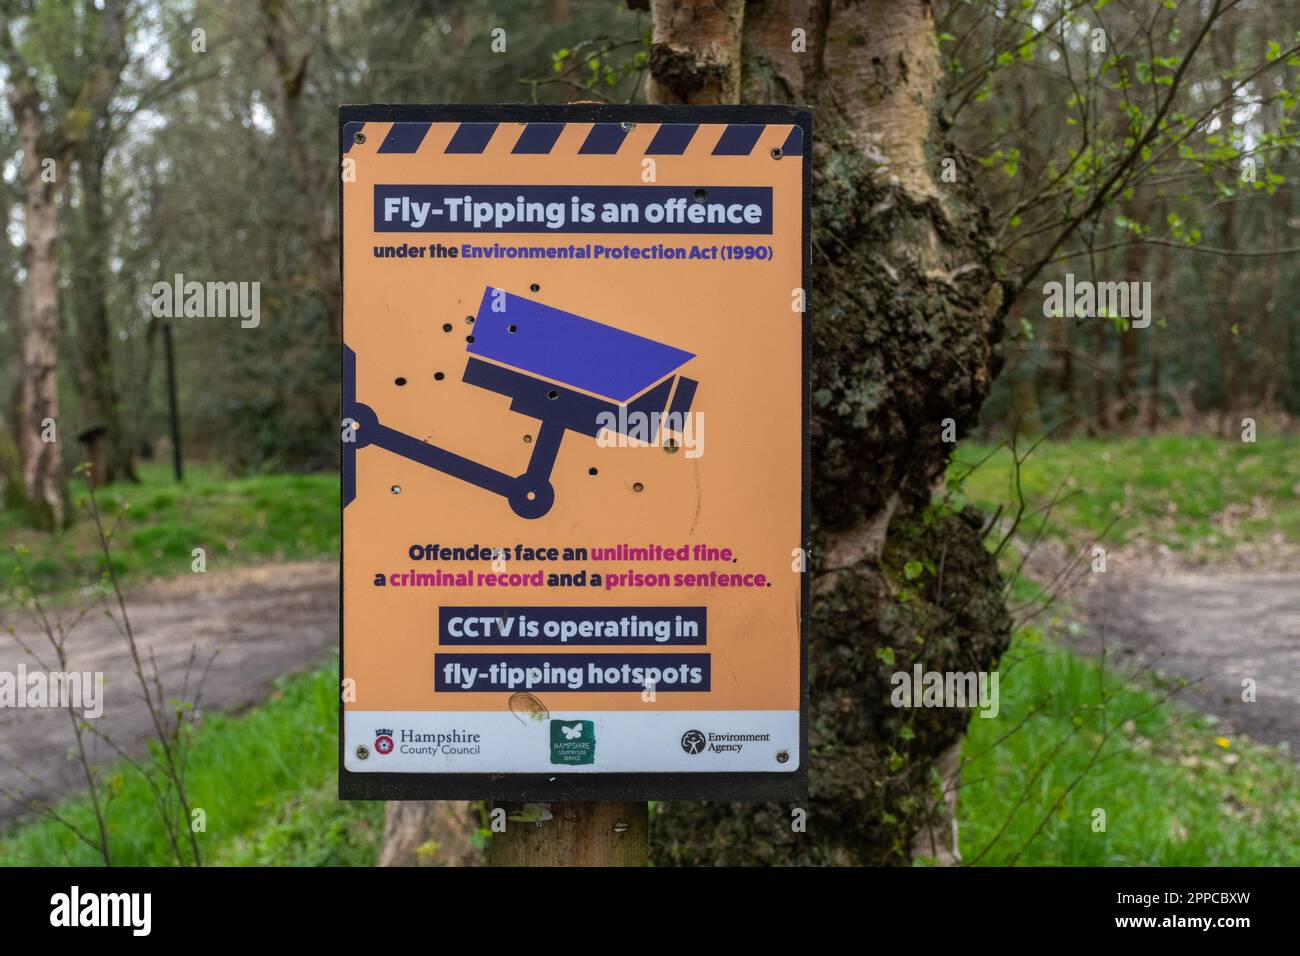 Le vol-pourboires est un signe d'infraction dans un parking rural de campagne, Angleterre, Royaume-Uni. Avertissement la vidéosurveillance fonctionne dans des zones de basculement. Banque D'Images